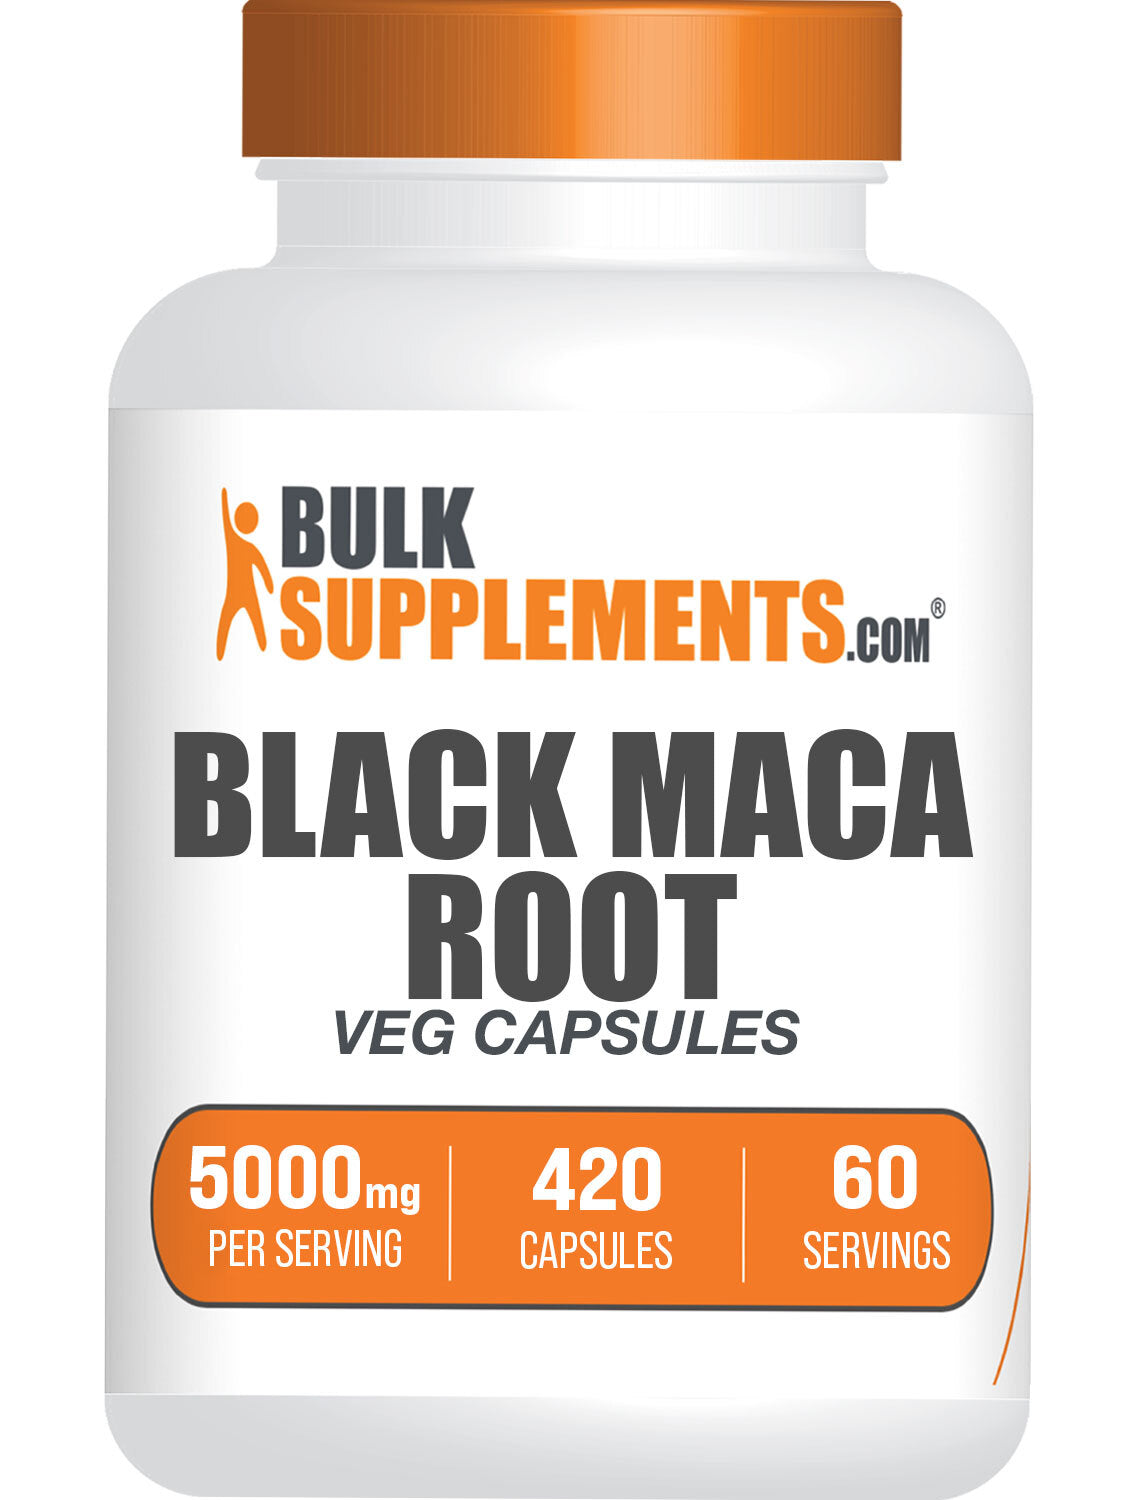 420 capsules of black maca